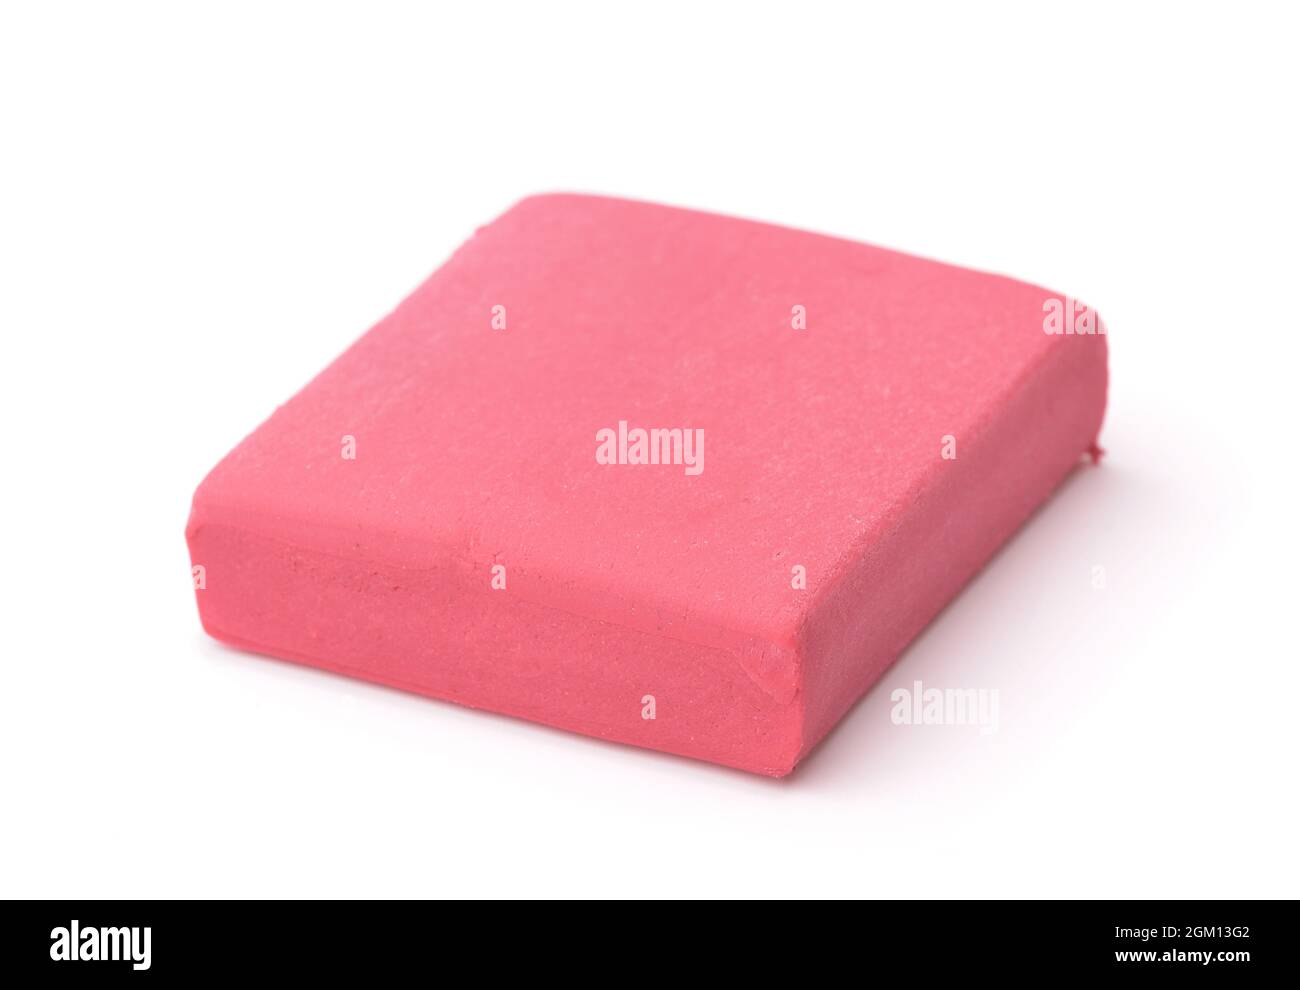 Gomma d'arte impastata rosa isolata su bianco Foto Stock